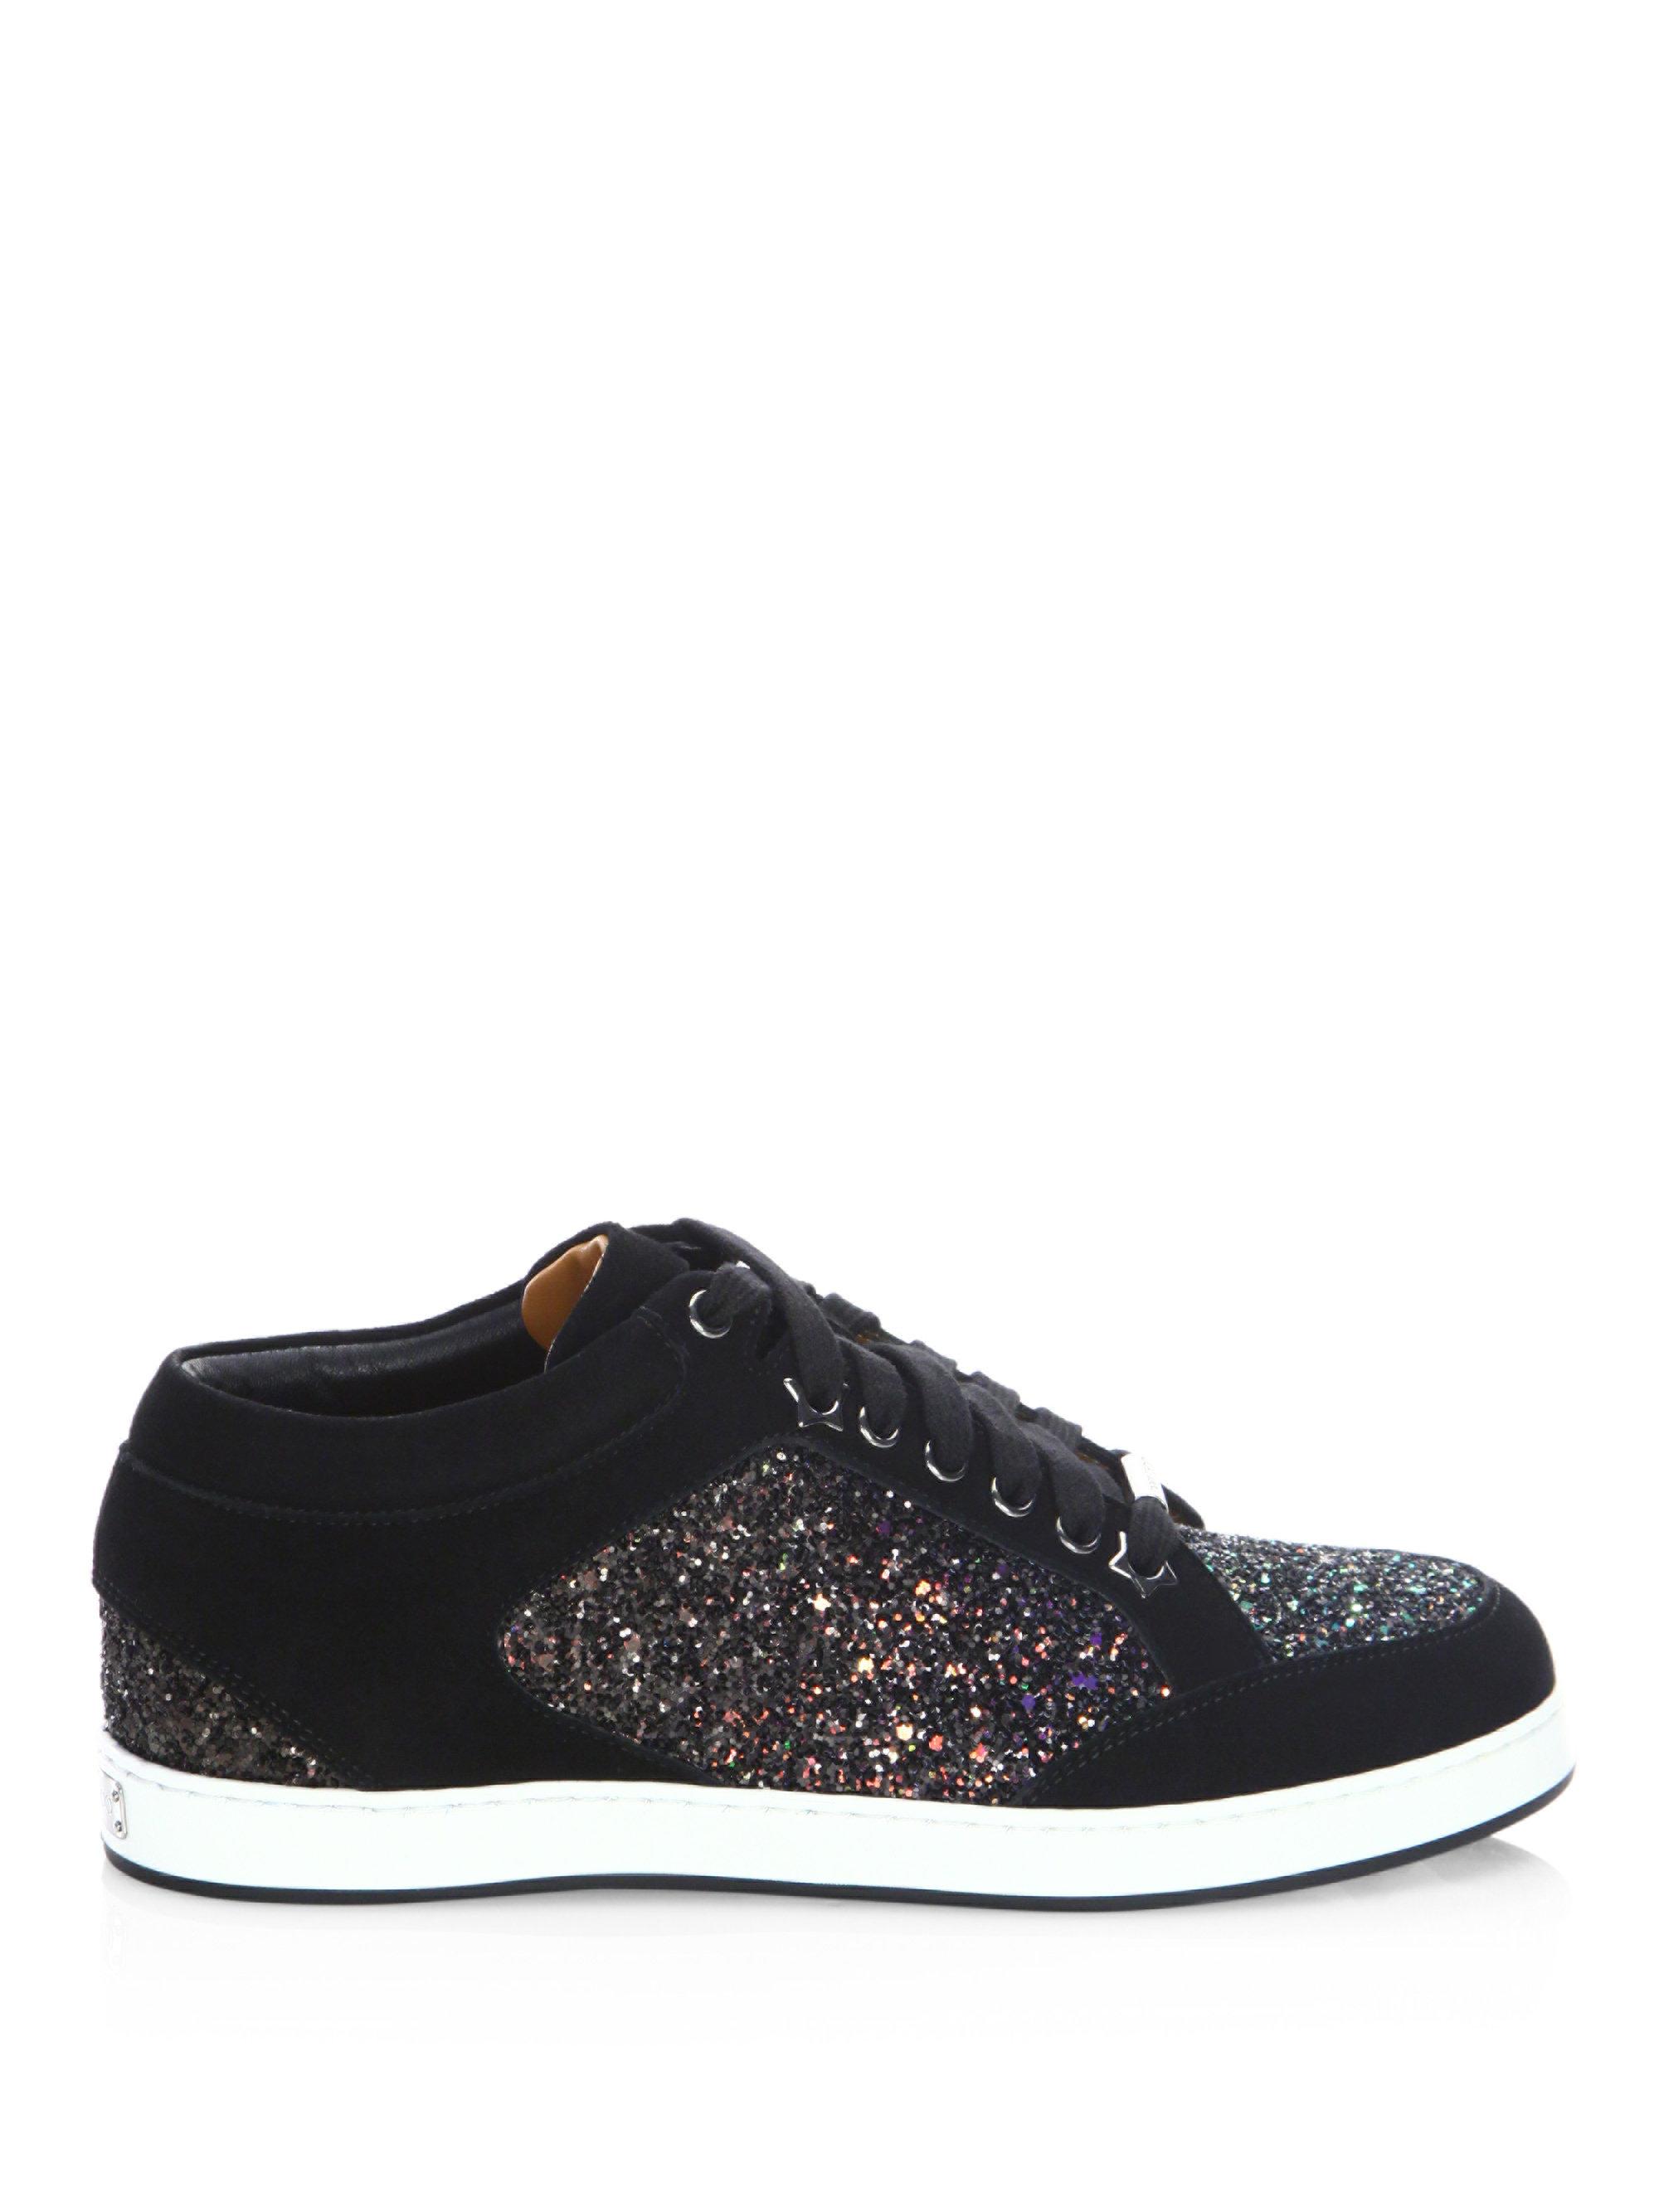 Jimmy Choo Miami Glitter & Suede Sneakers in Black | Lyst